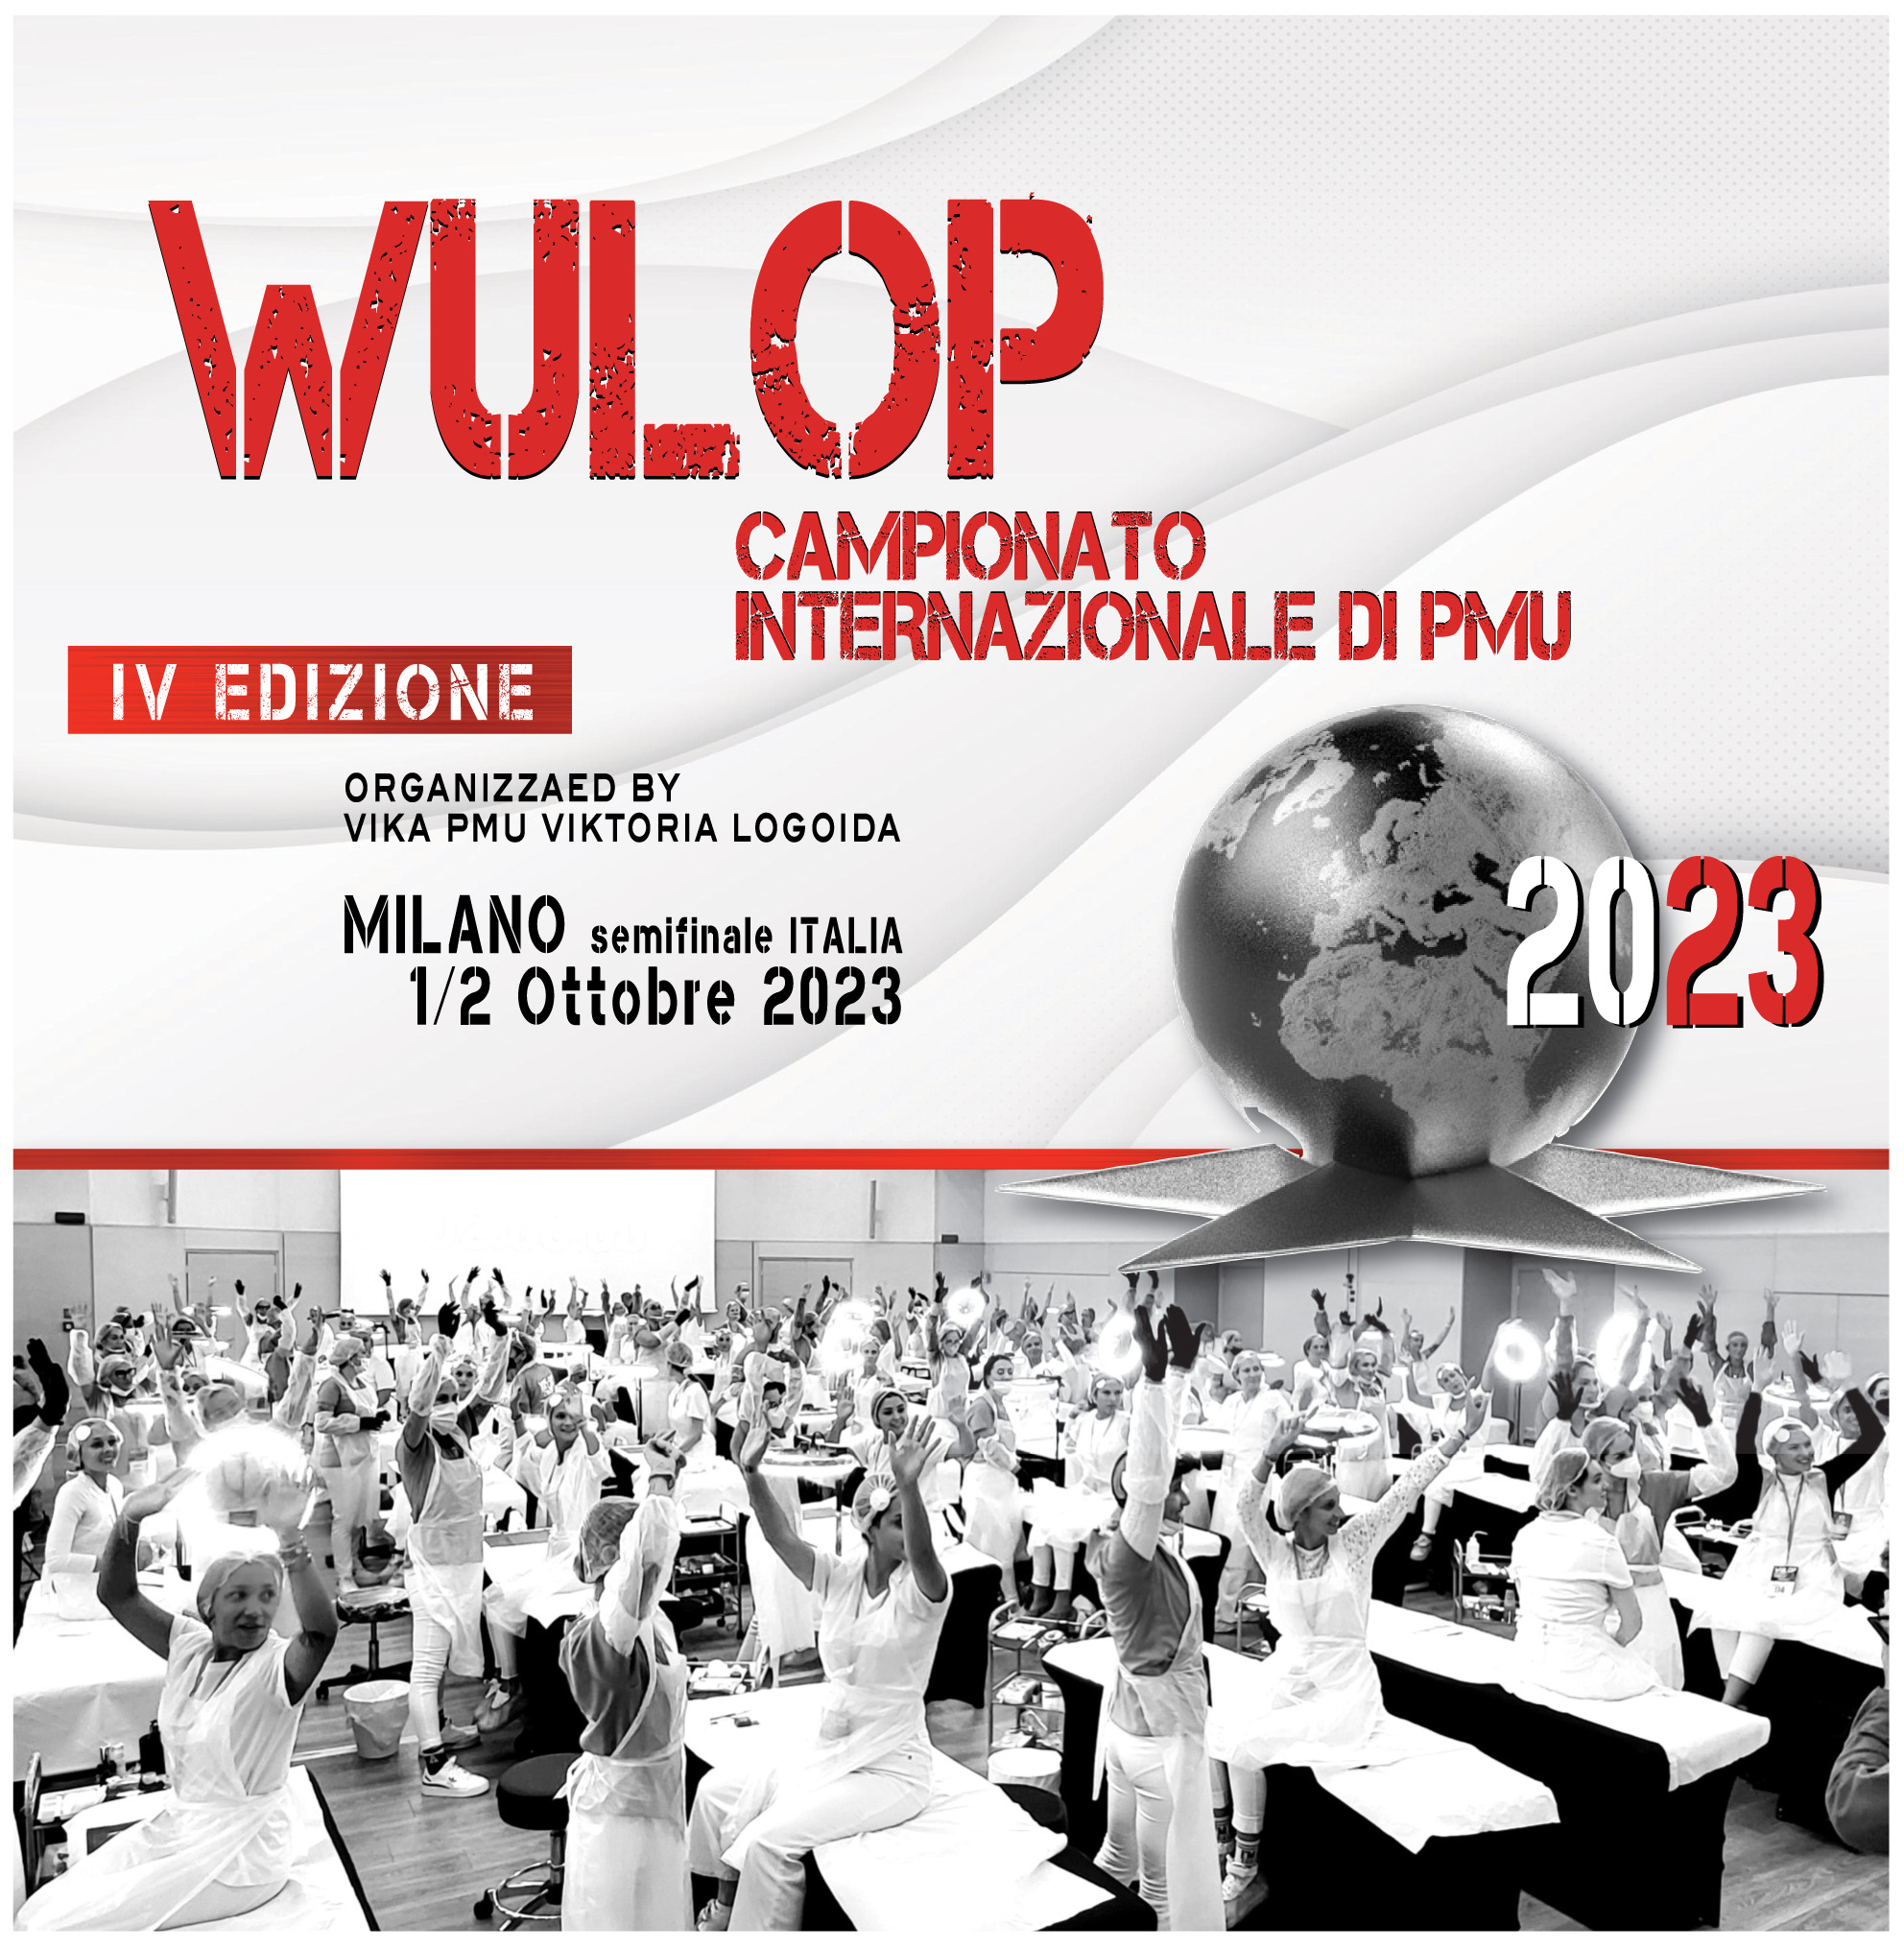 Wulop Italia 2023 Campionato Internazionale Pmu Milano 1/2 Ottobre